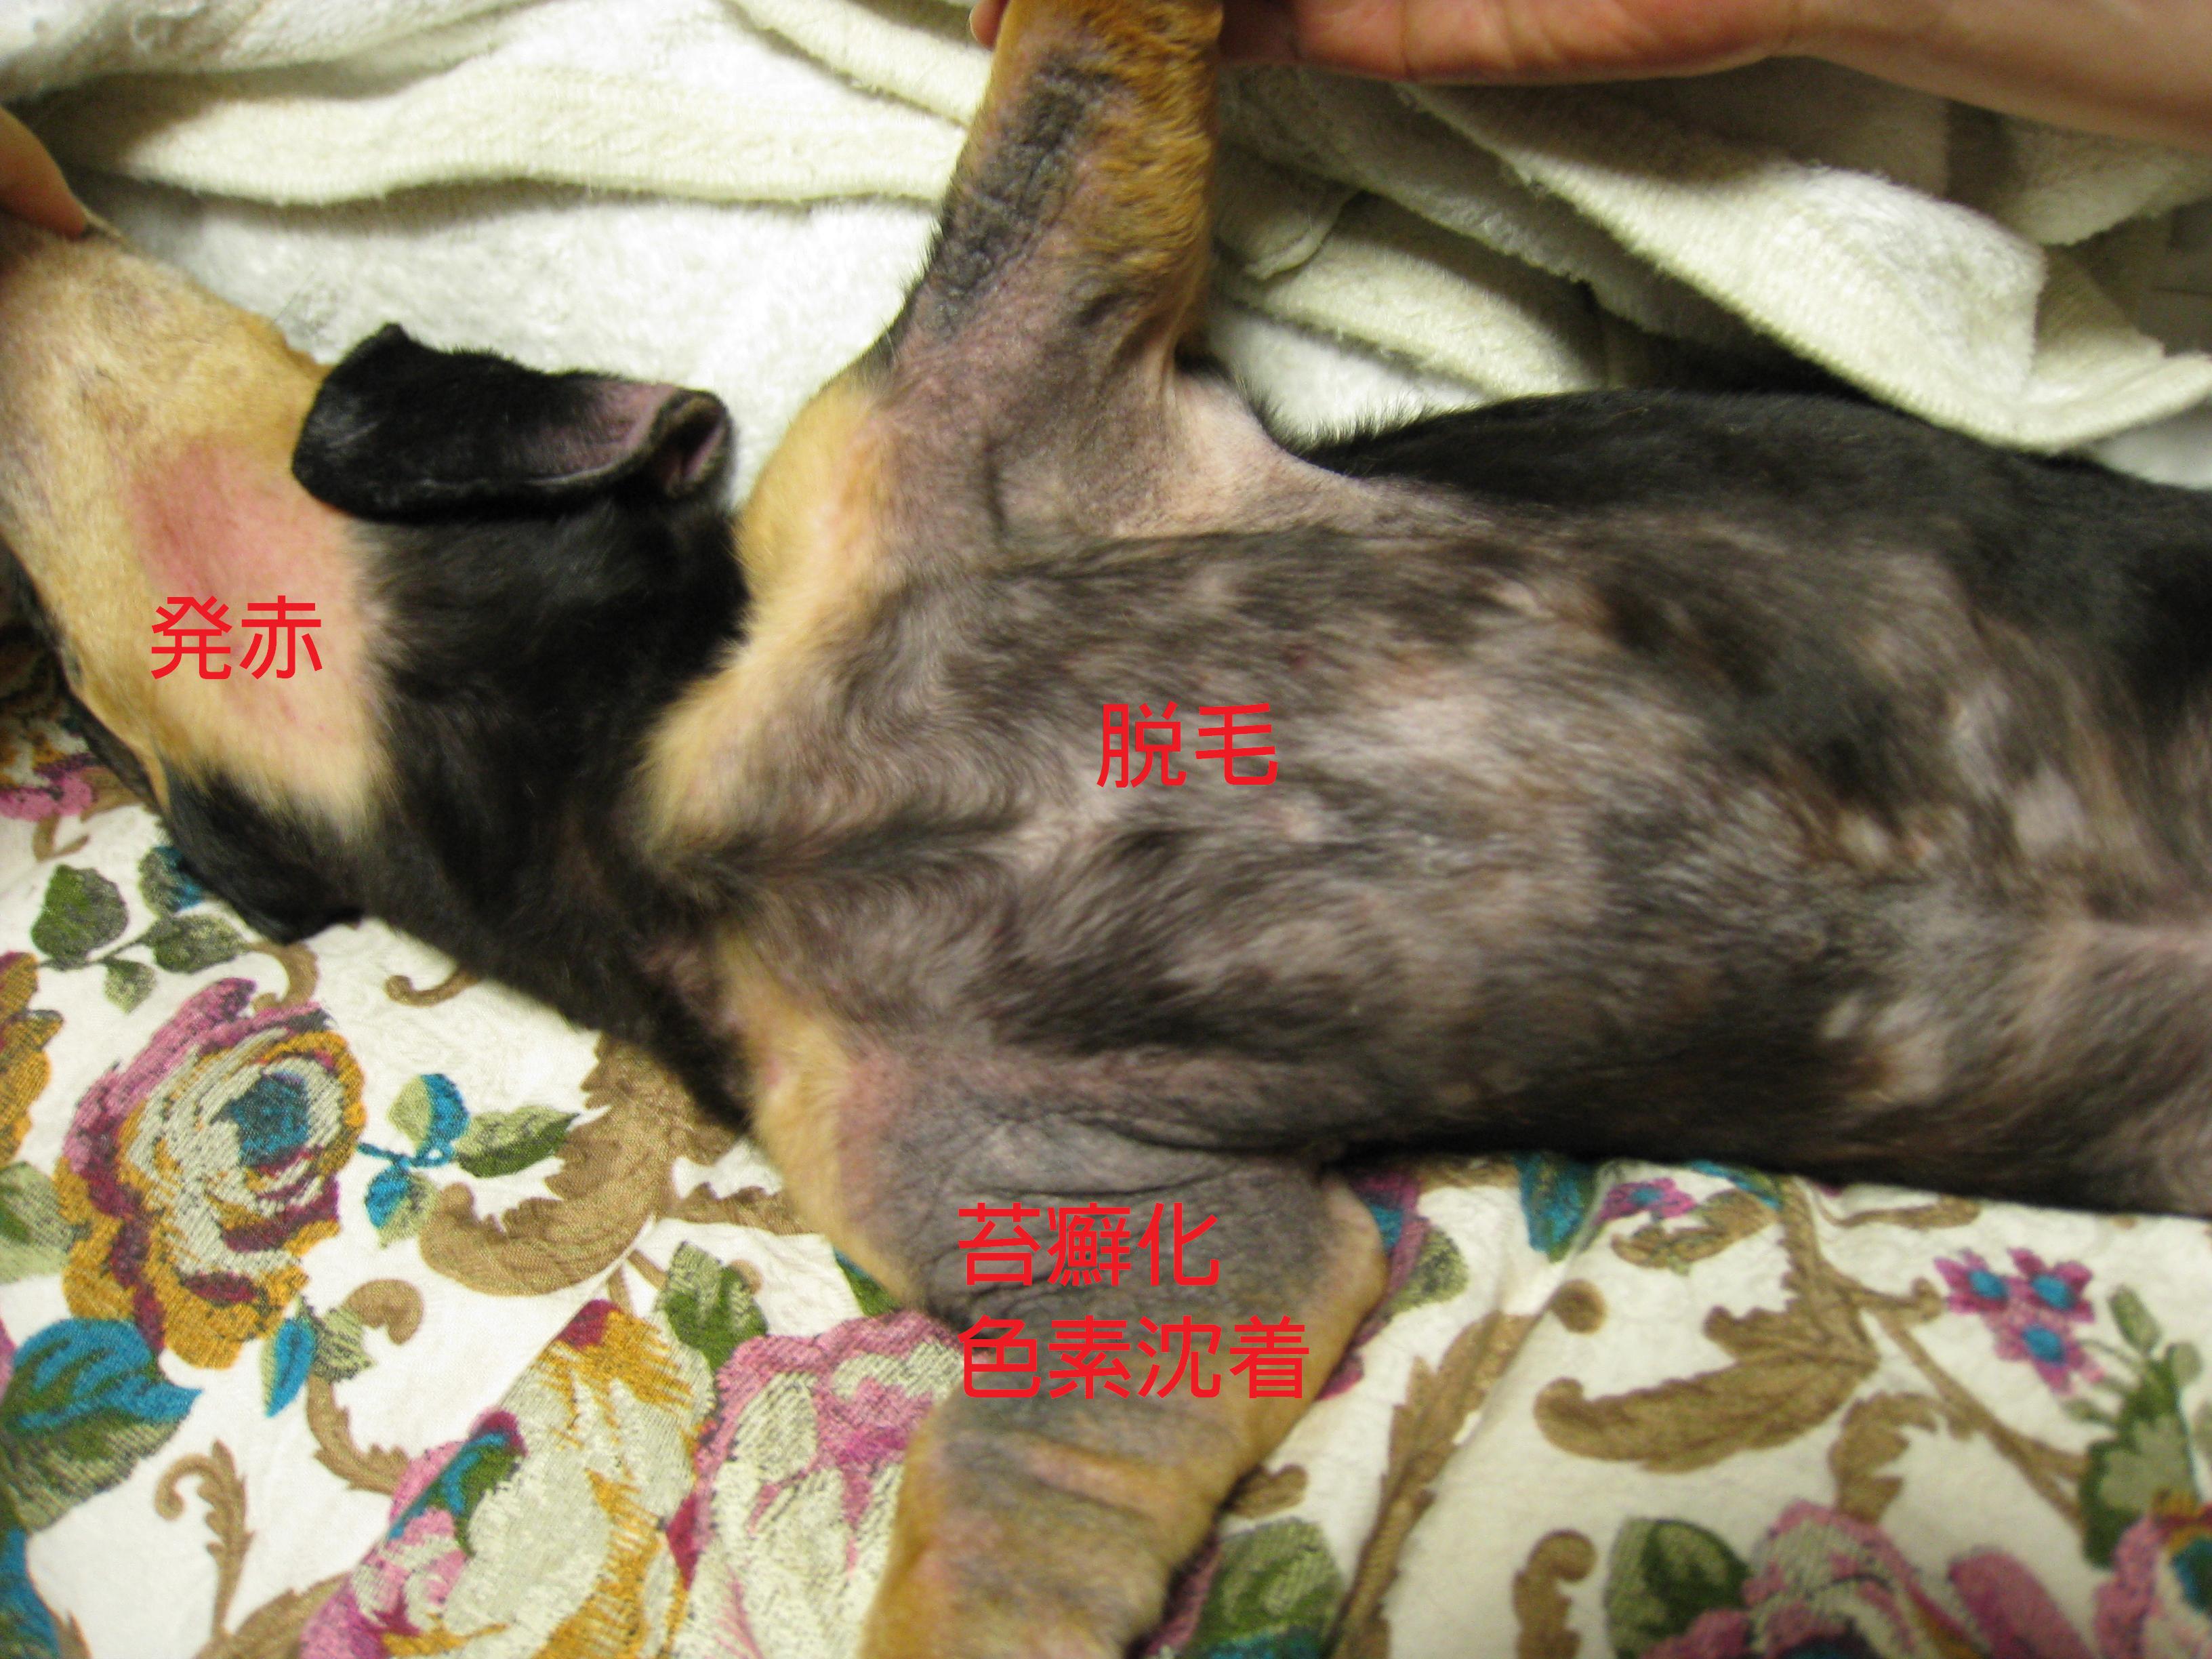 マラセチア性皮膚炎 脂漏性皮膚炎 立川市の動物病院 犬 猫の病気や予防接種に マミー動物病院